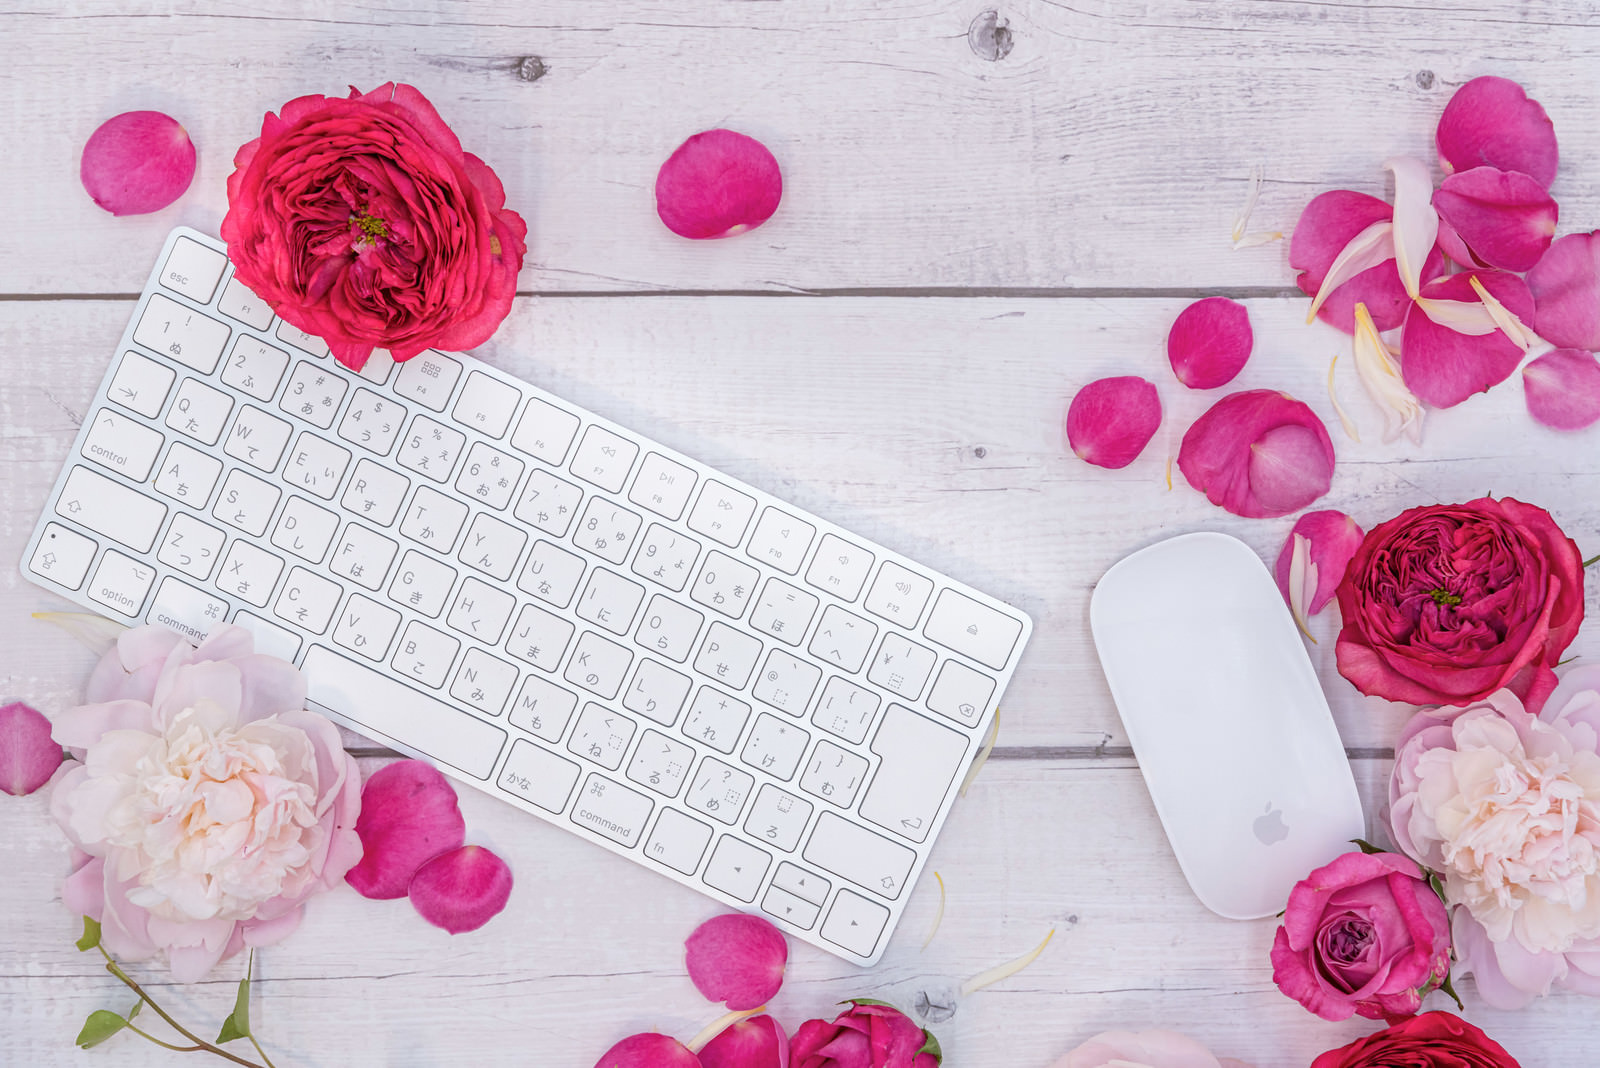 「薔薇の花弁とキーボード」の写真